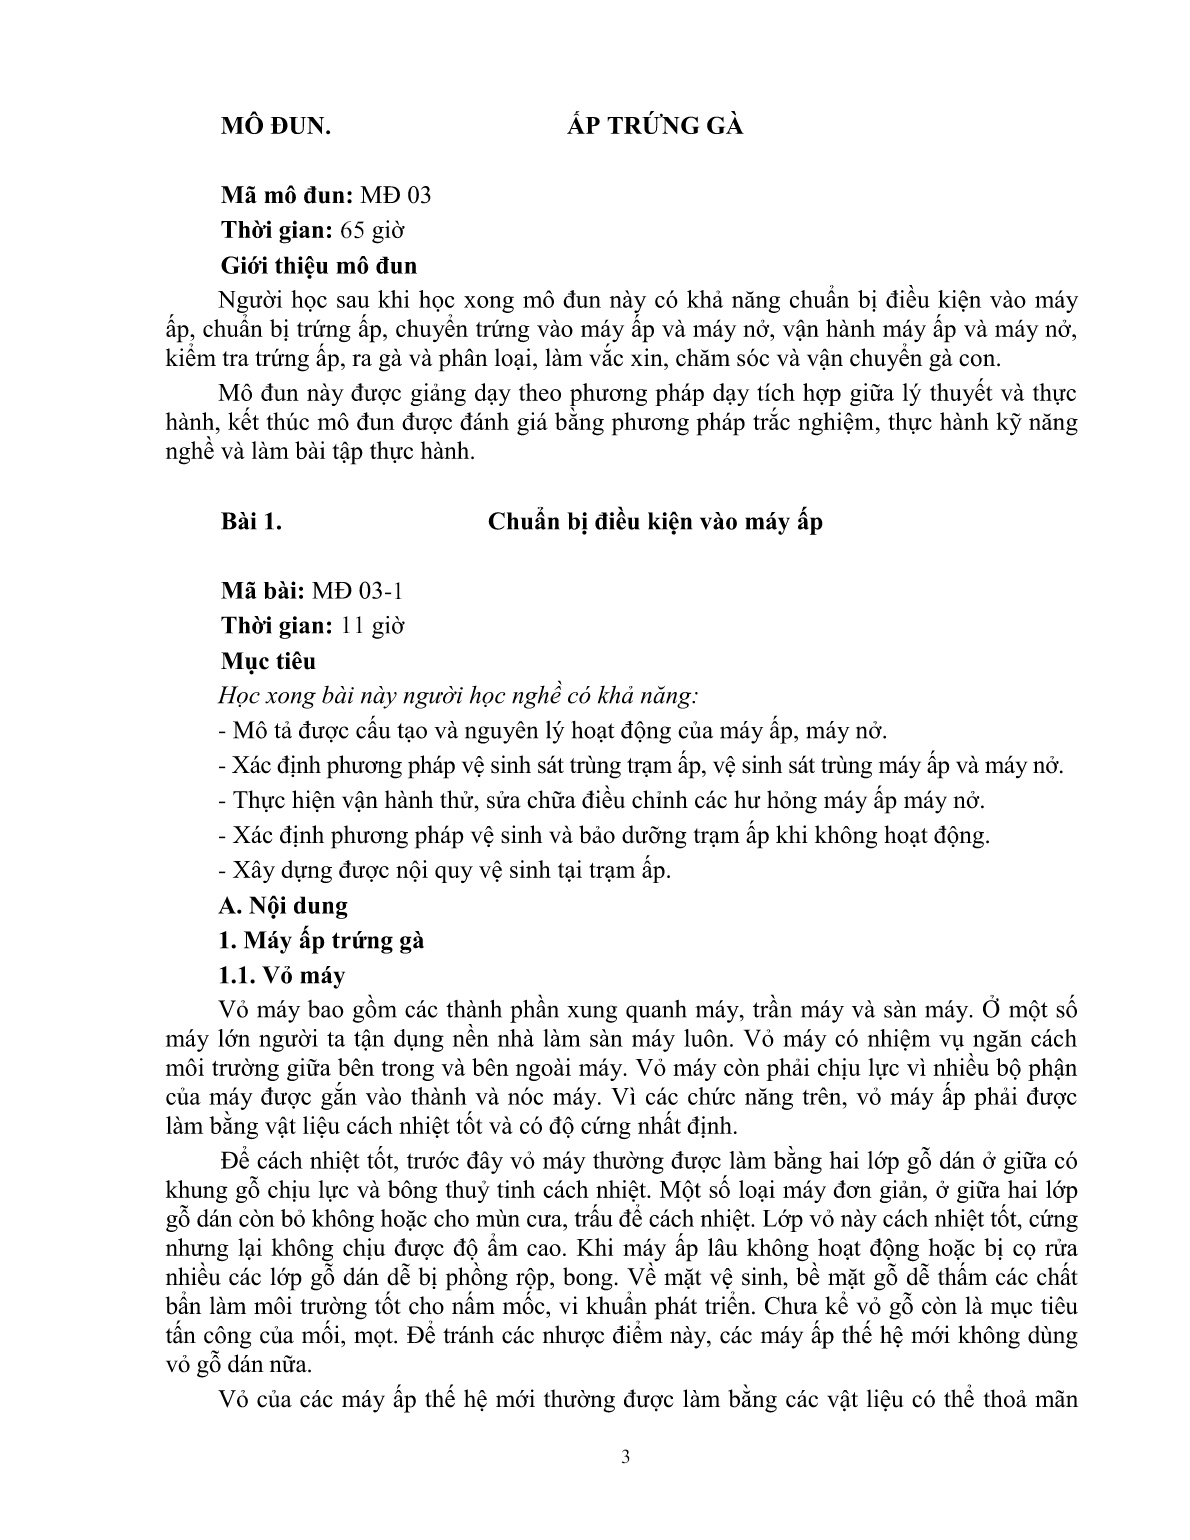 Giáo trình mô đun Ấp trứng gà (Trình độ: Đào tạo dưới 3 tháng) trang 4